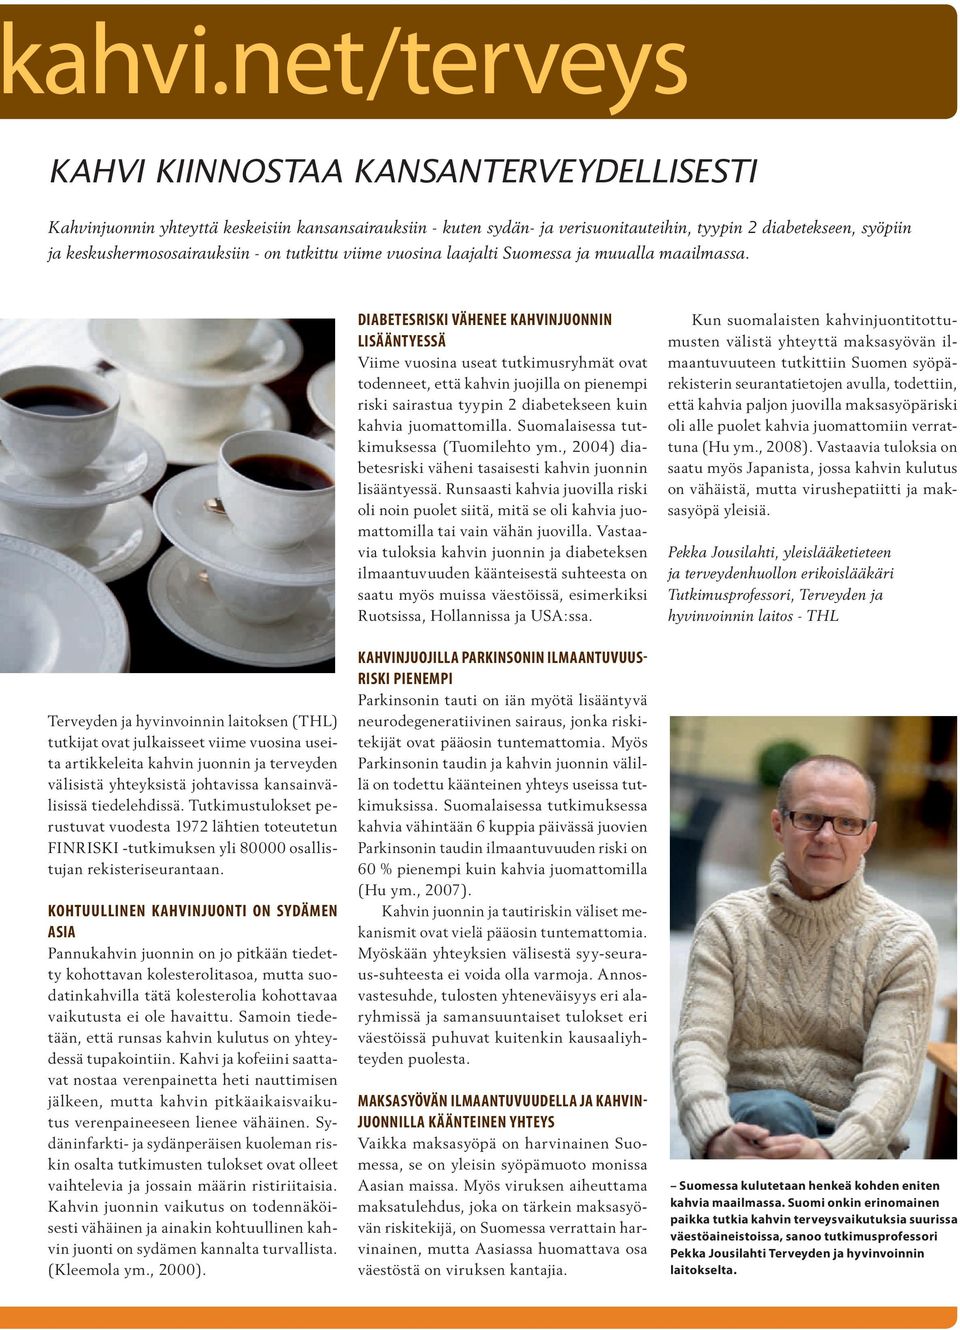 Terveyden ja hyvinvoinnin laitoksen (THL) tutkijat ovat julkaisseet viime vuosina useita artikkeleita kahvin juonnin ja terveyden välisistä yhteyksistä johtavissa kansainvälisissä tiedelehdissä.